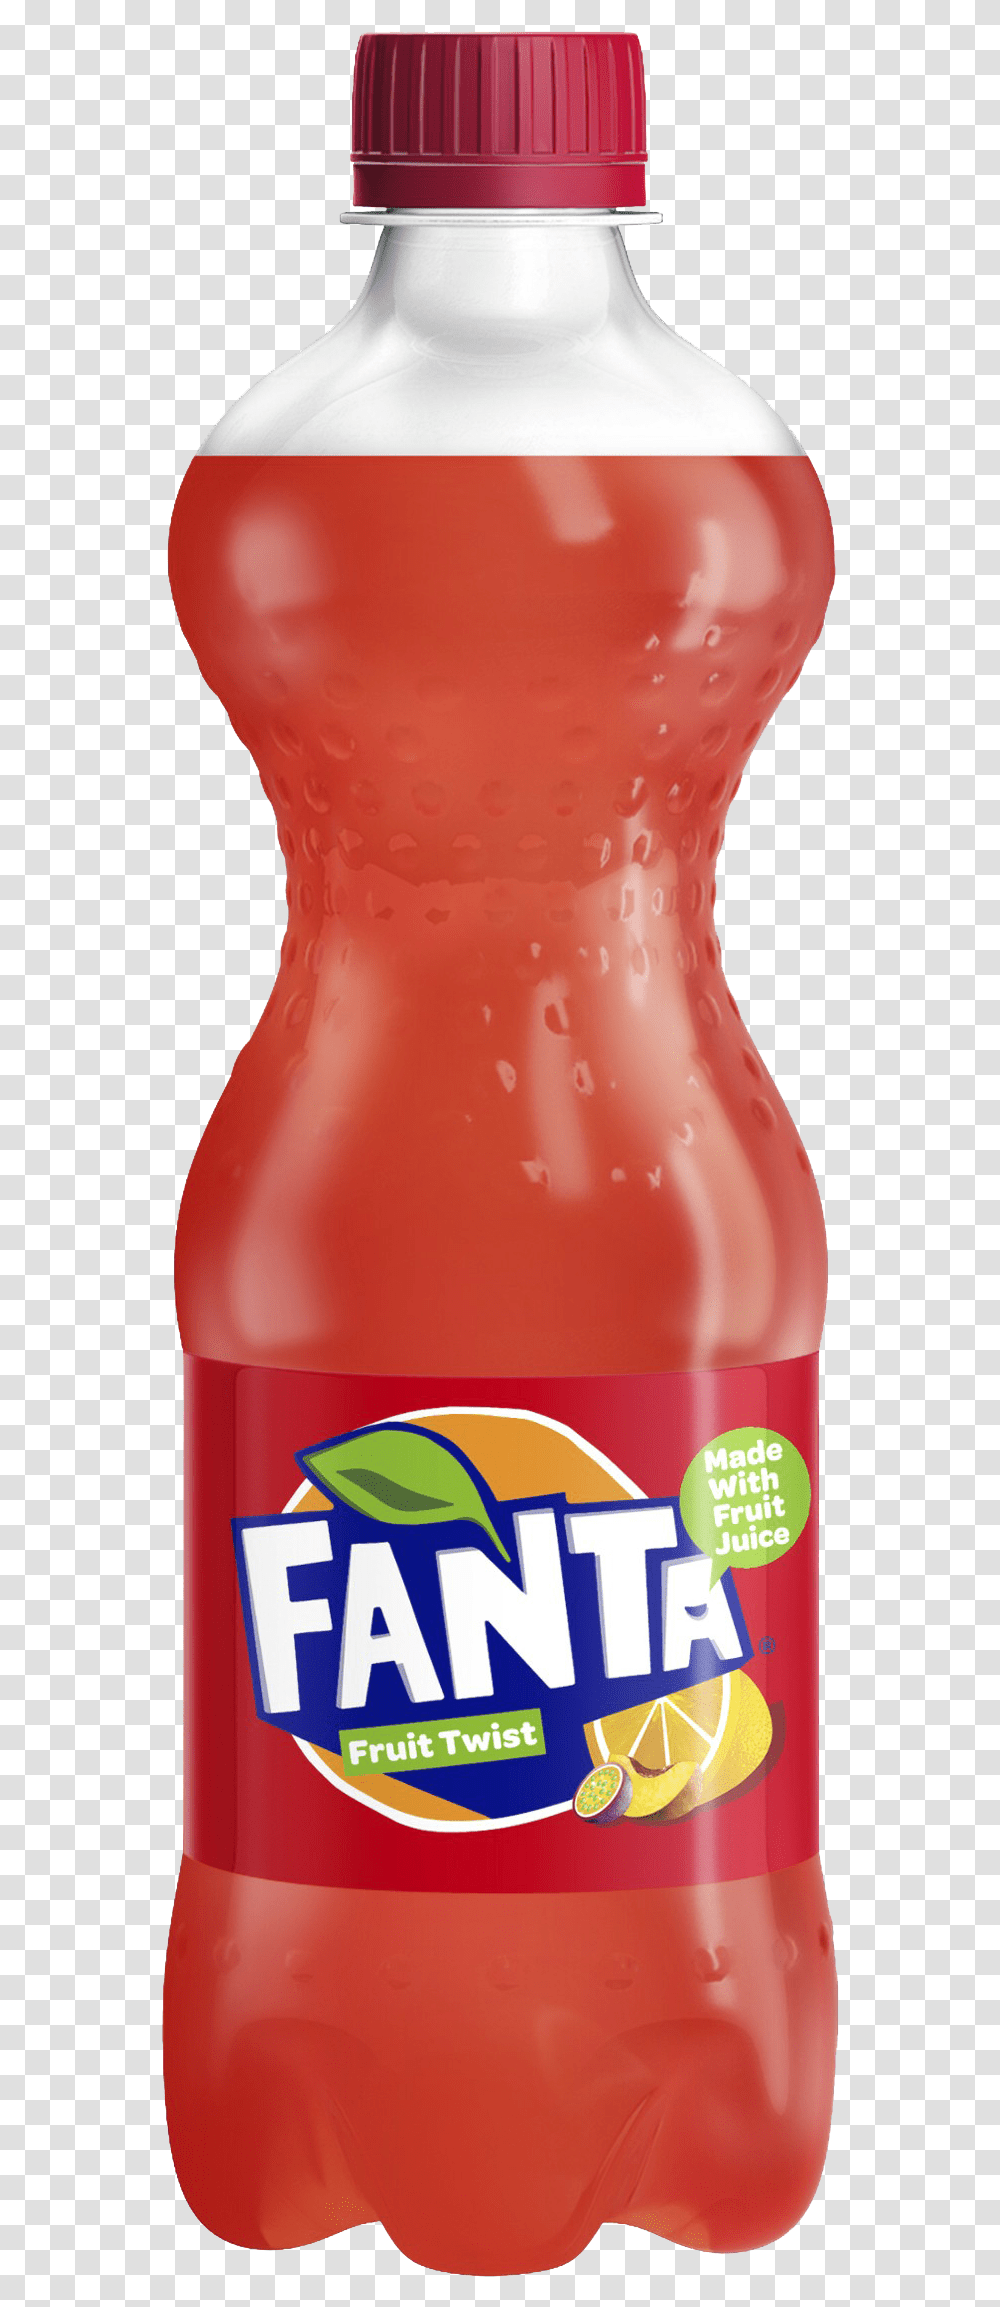 Fanta Clipart Fanta Fruit Twist, Soda, Beverage, Drink, Ketchup Transparent Png